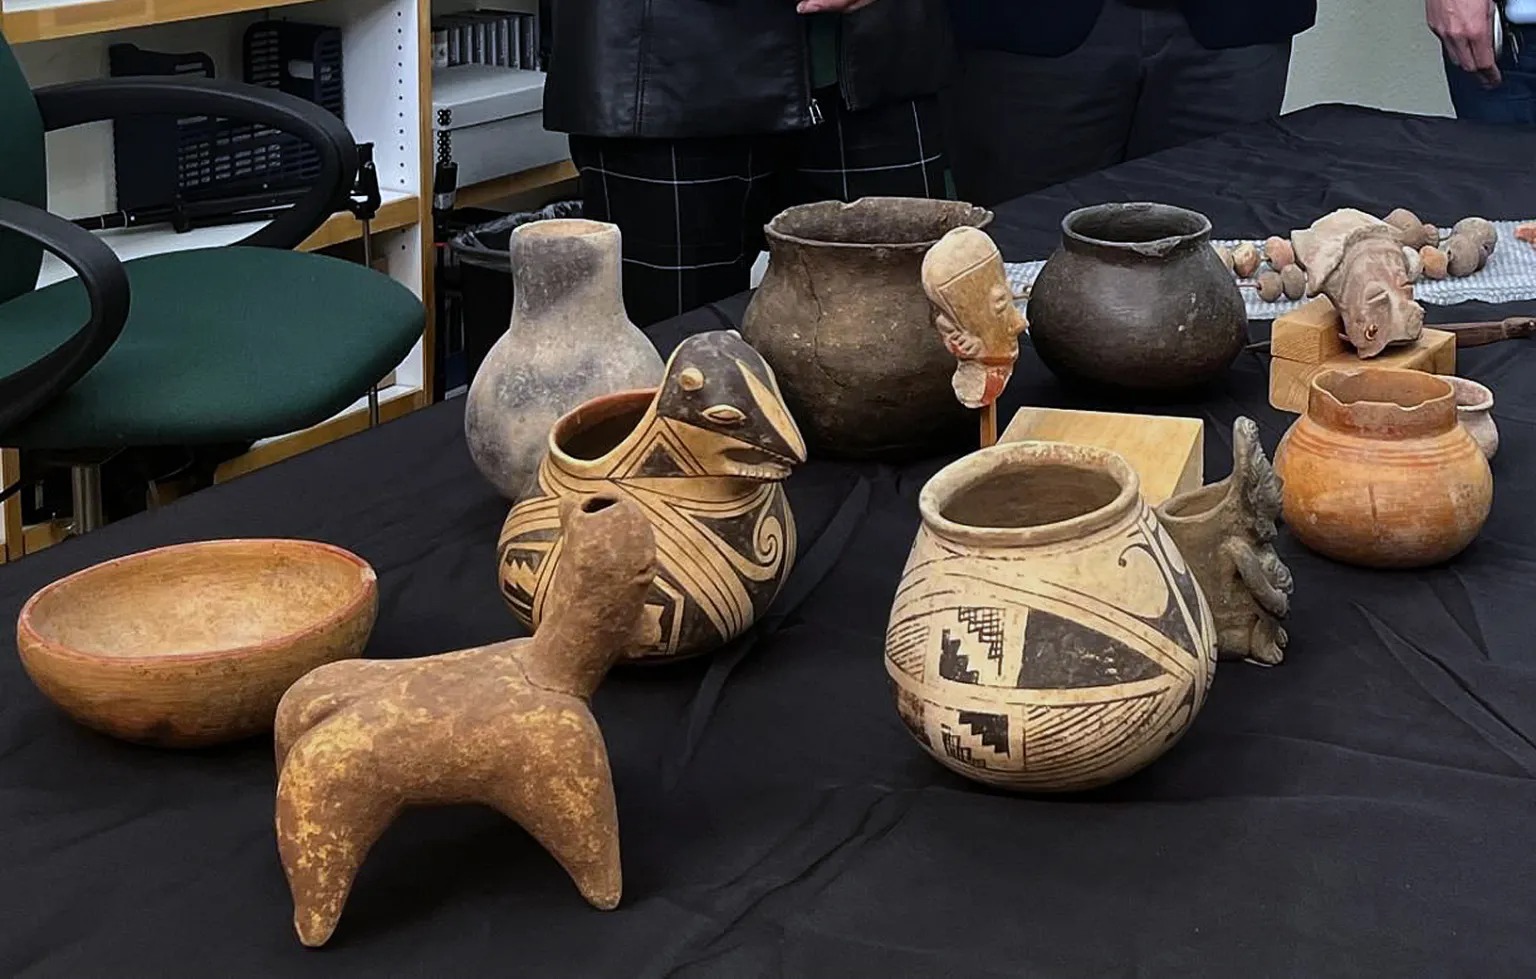 El Gobierno de México, a través del Consulado en Albuquerque, Estados Unidos, recibió 41 piezas arqueológicas de origen mexicano, entregadas voluntariamente por el Departamento de Asuntos Culturales (DAC) de Nuevo México.